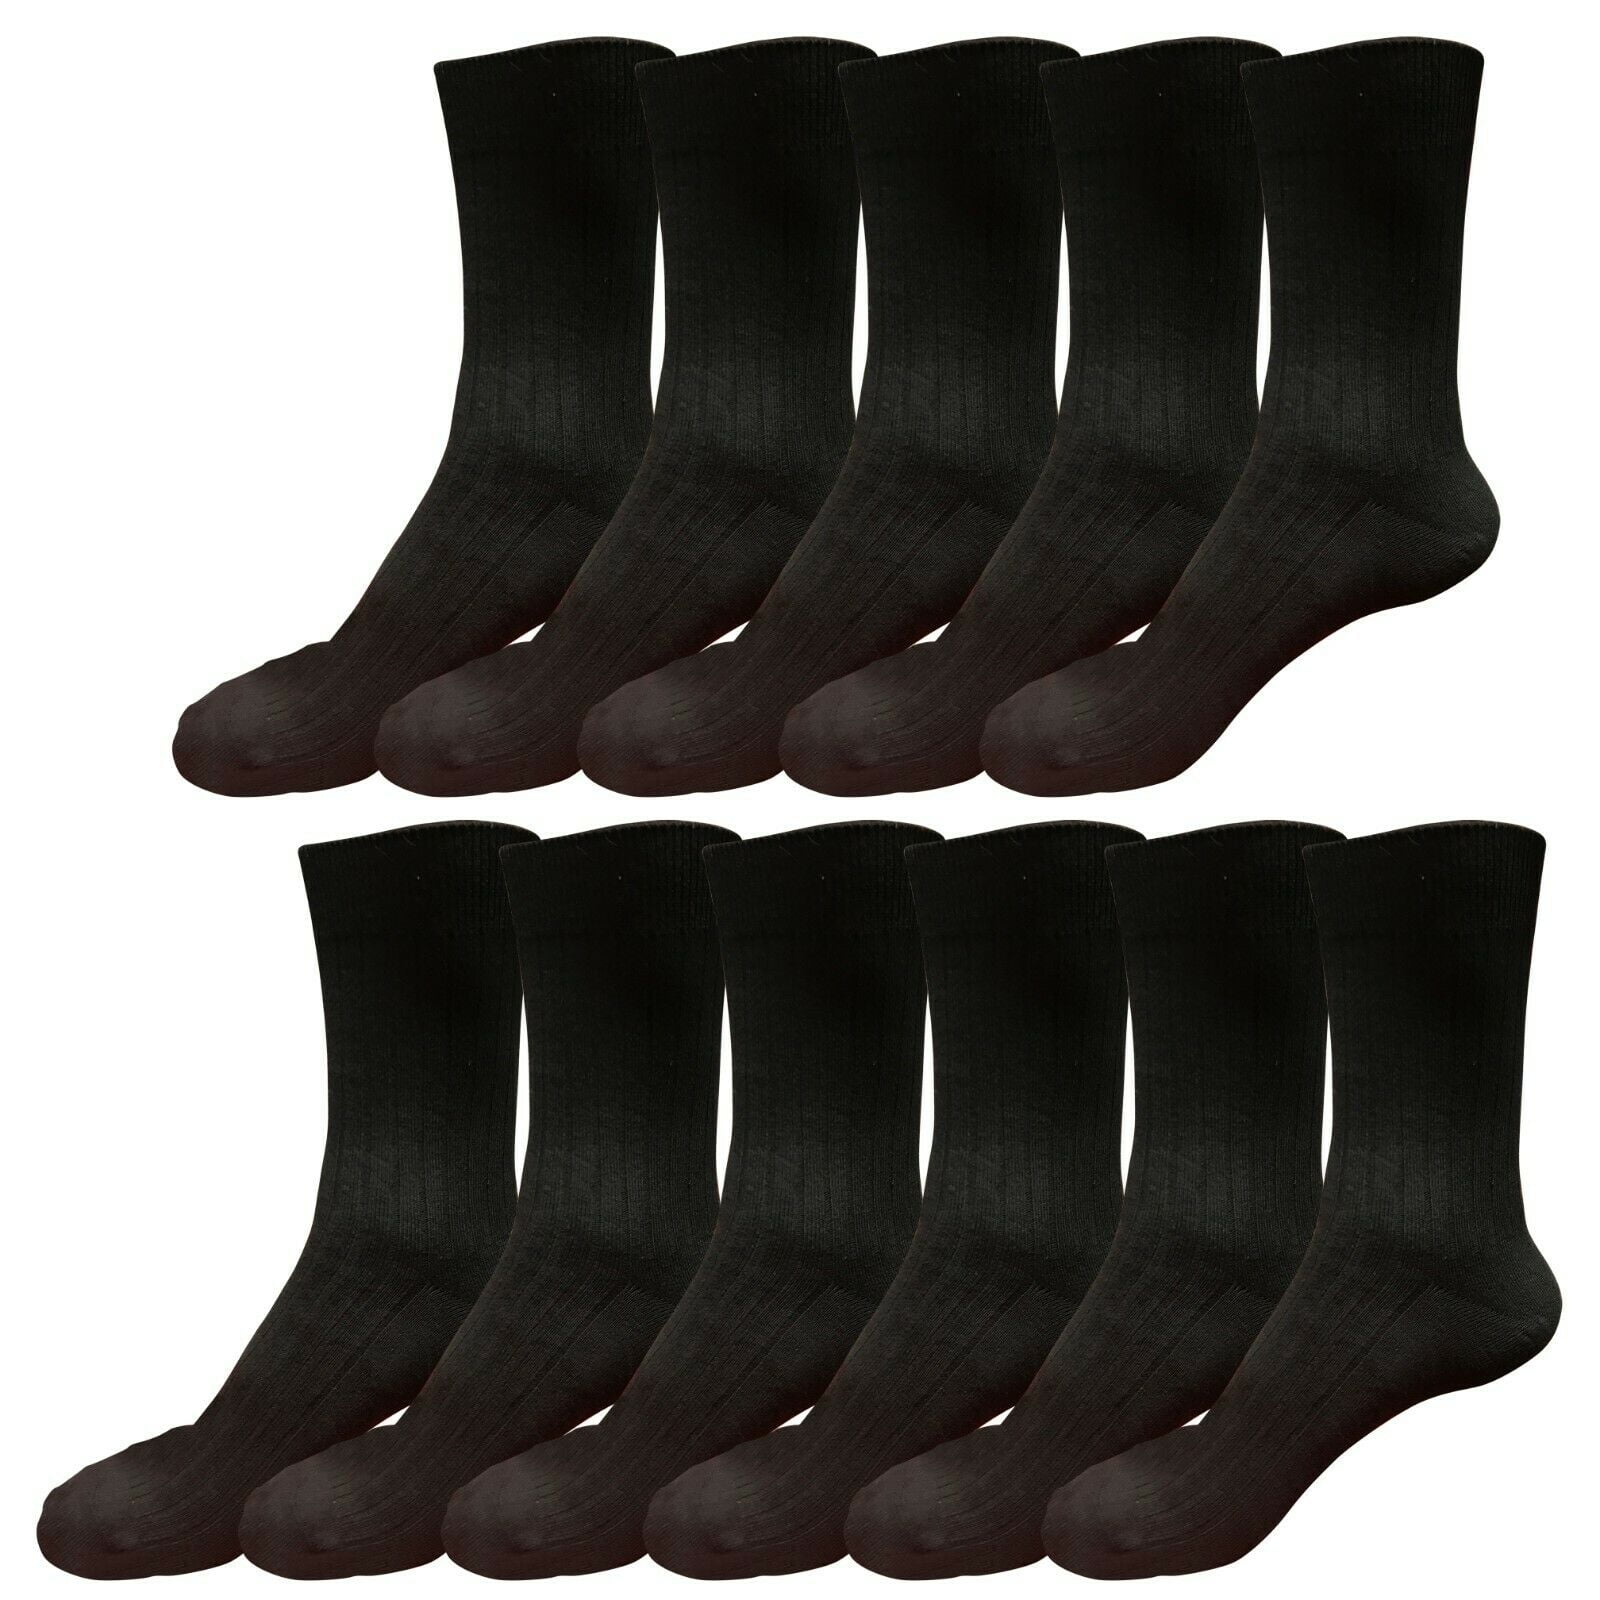 1 Pair Men Plain Color Breathable Combed Cotton Warm Soft Dress Socks Size 6-11 